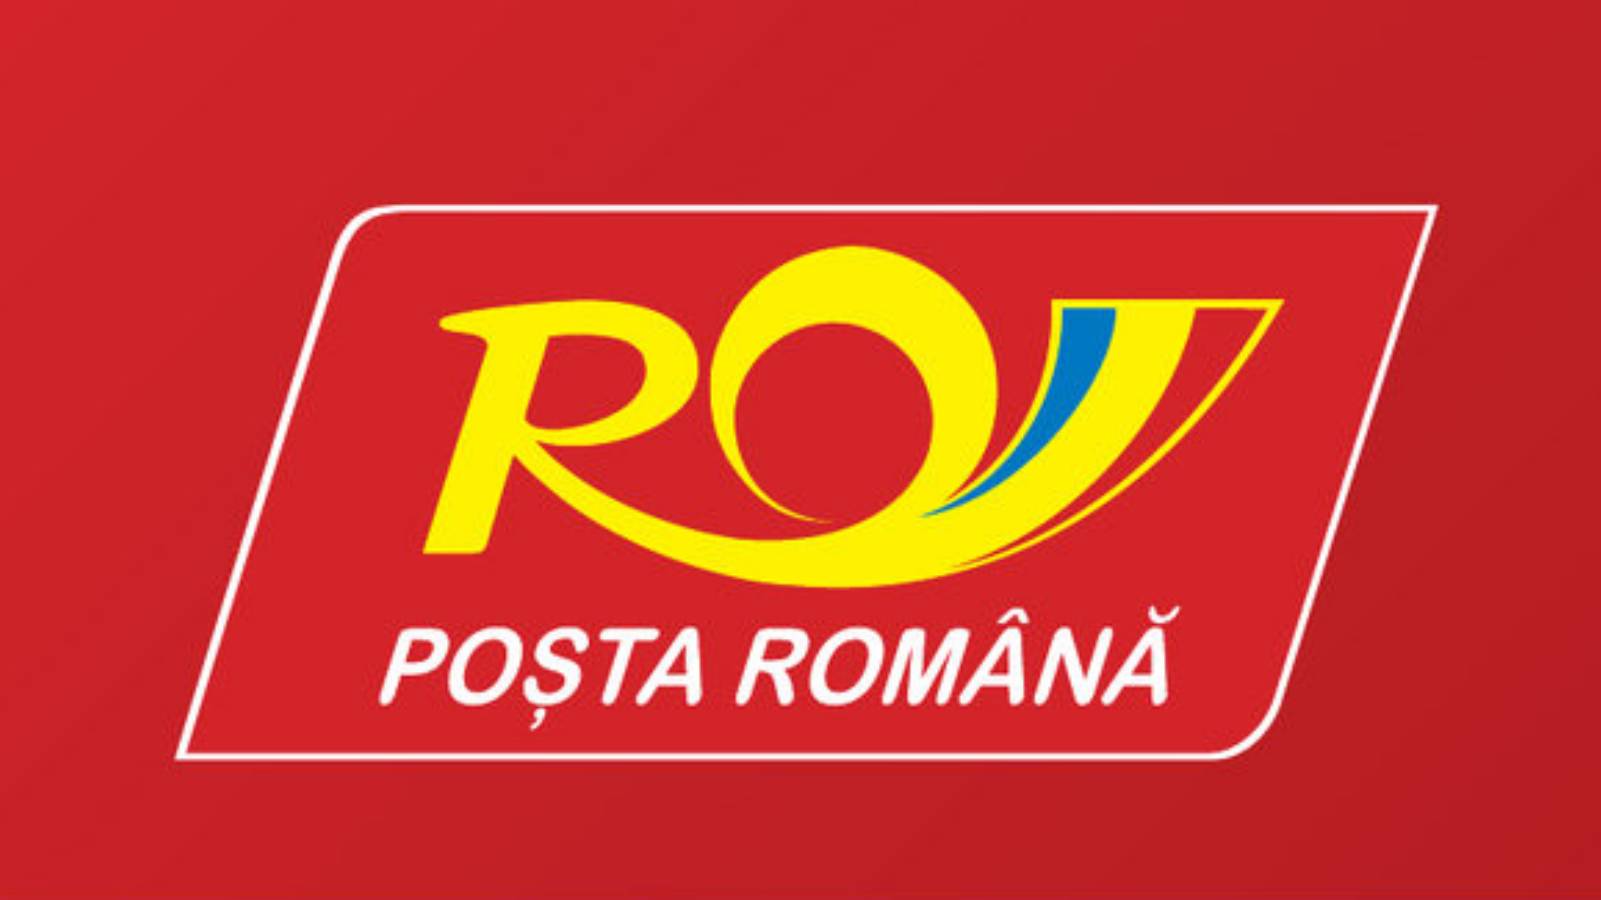 Spese di trasporto del calcolatore postale rumeno